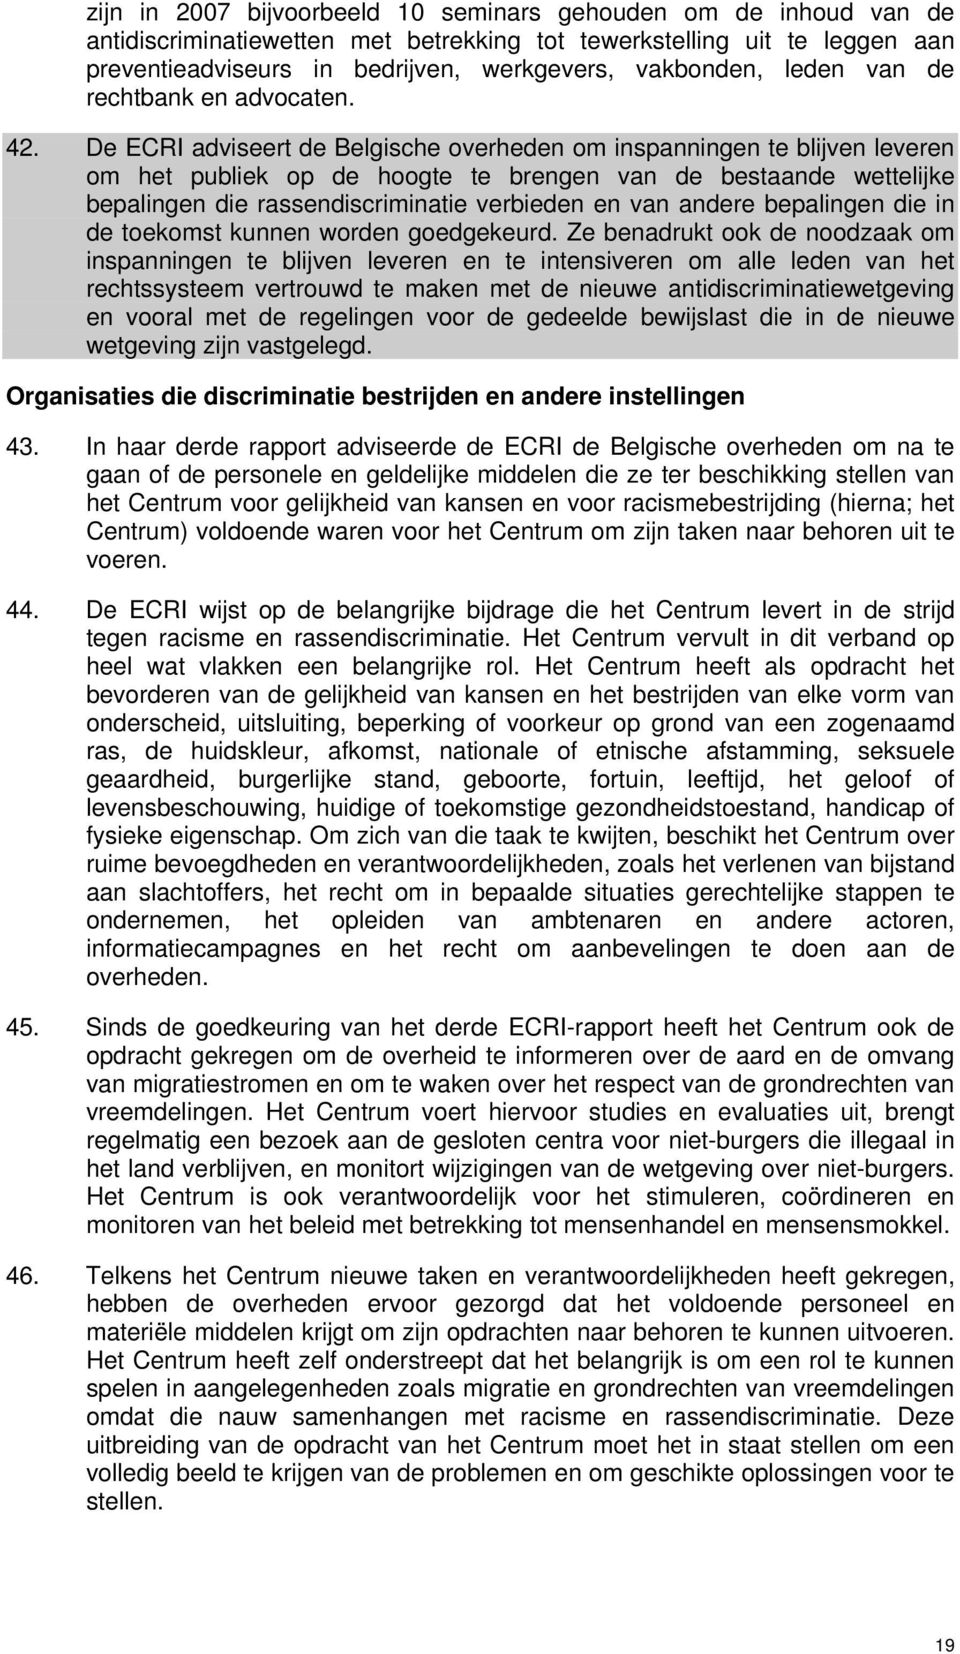 De ECRI adviseert de Belgische overheden om inspanningen te blijven leveren om het publiek op de hoogte te brengen van de bestaande wettelijke bepalingen die rassendiscriminatie verbieden en van